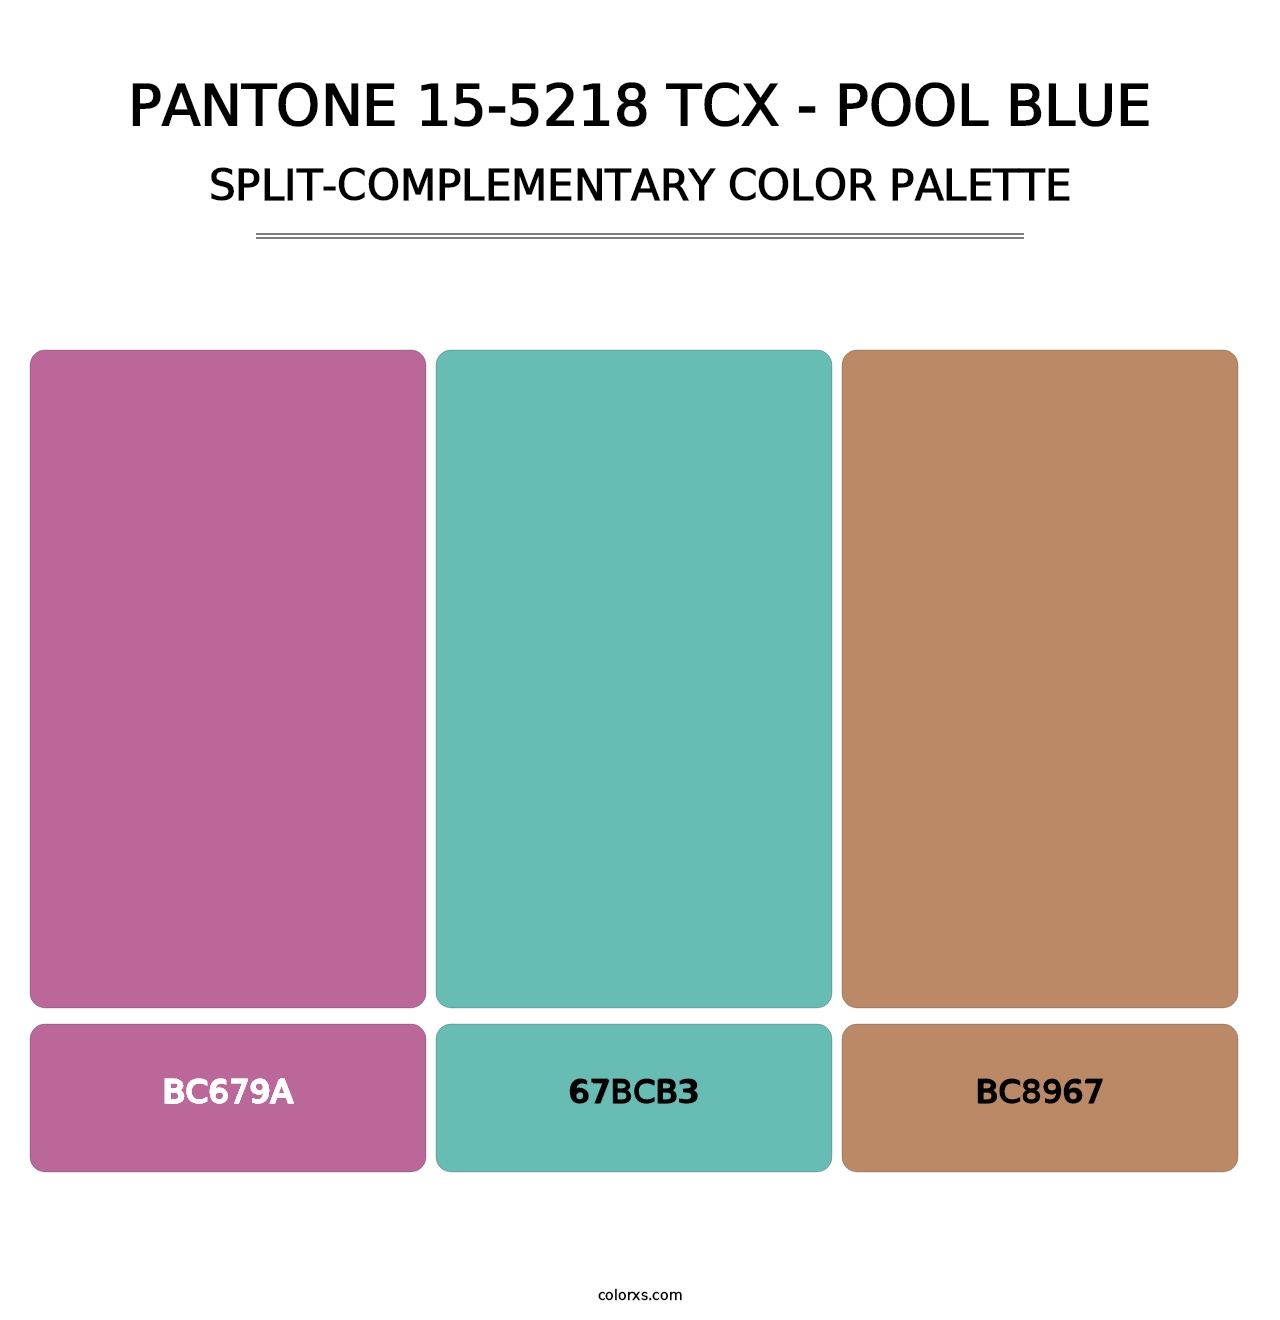 PANTONE 15-5218 TCX - Pool Blue - Split-Complementary Color Palette